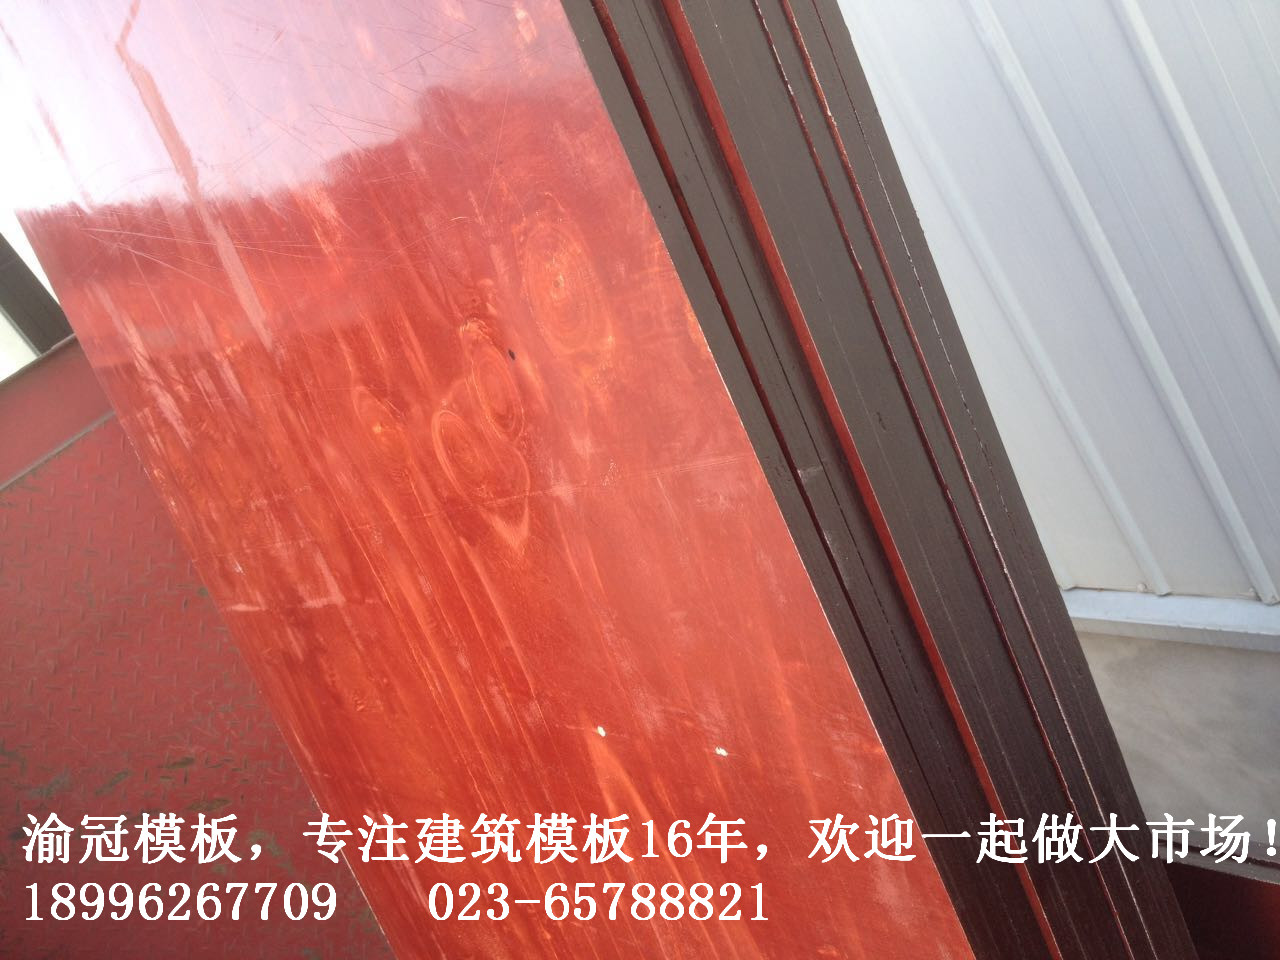 九层黑边建筑模板，1.40-1.45mm,咖啡黑边红面，高层专用模板，渝冠模板16年专业品质